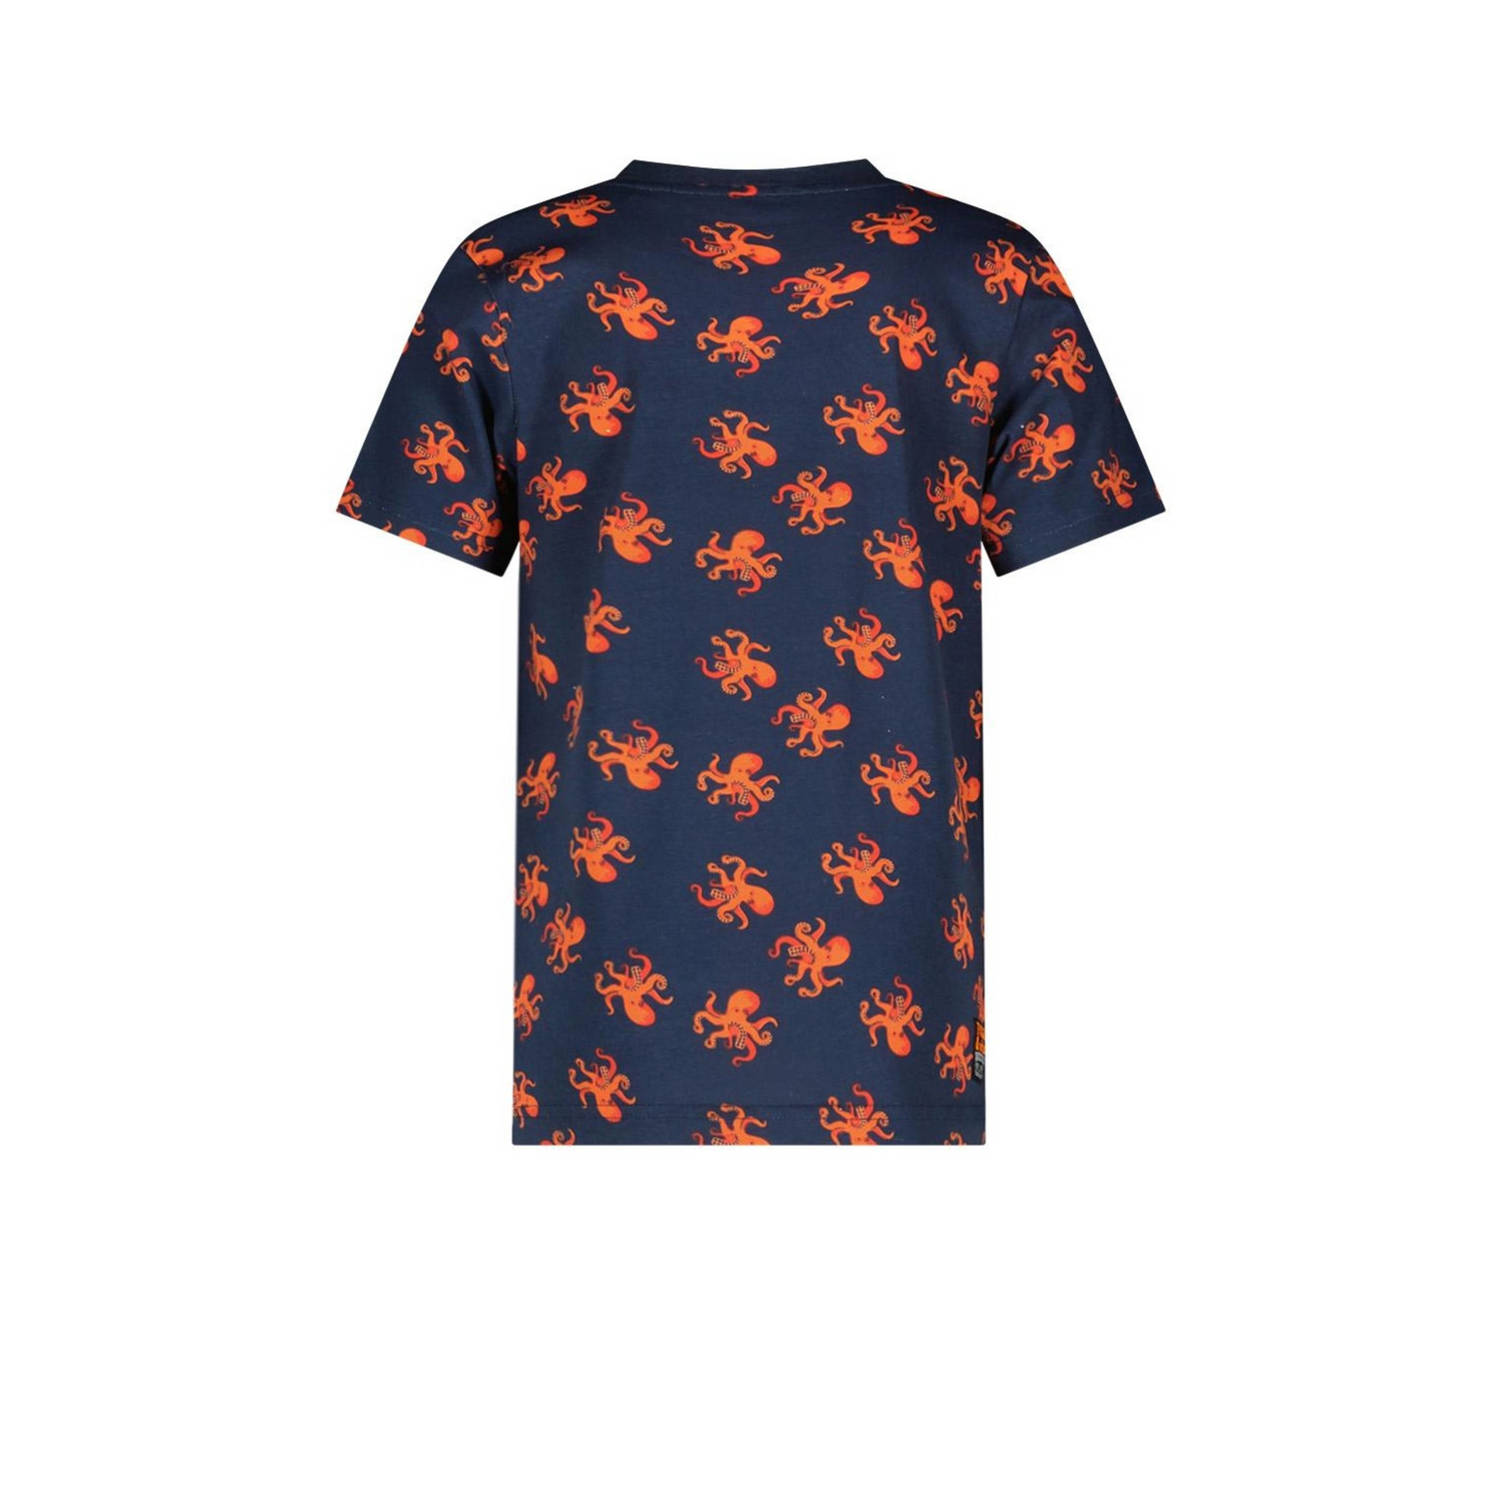 TYGO & vito T-shirt Thijs met all over print donkerblauw oranje